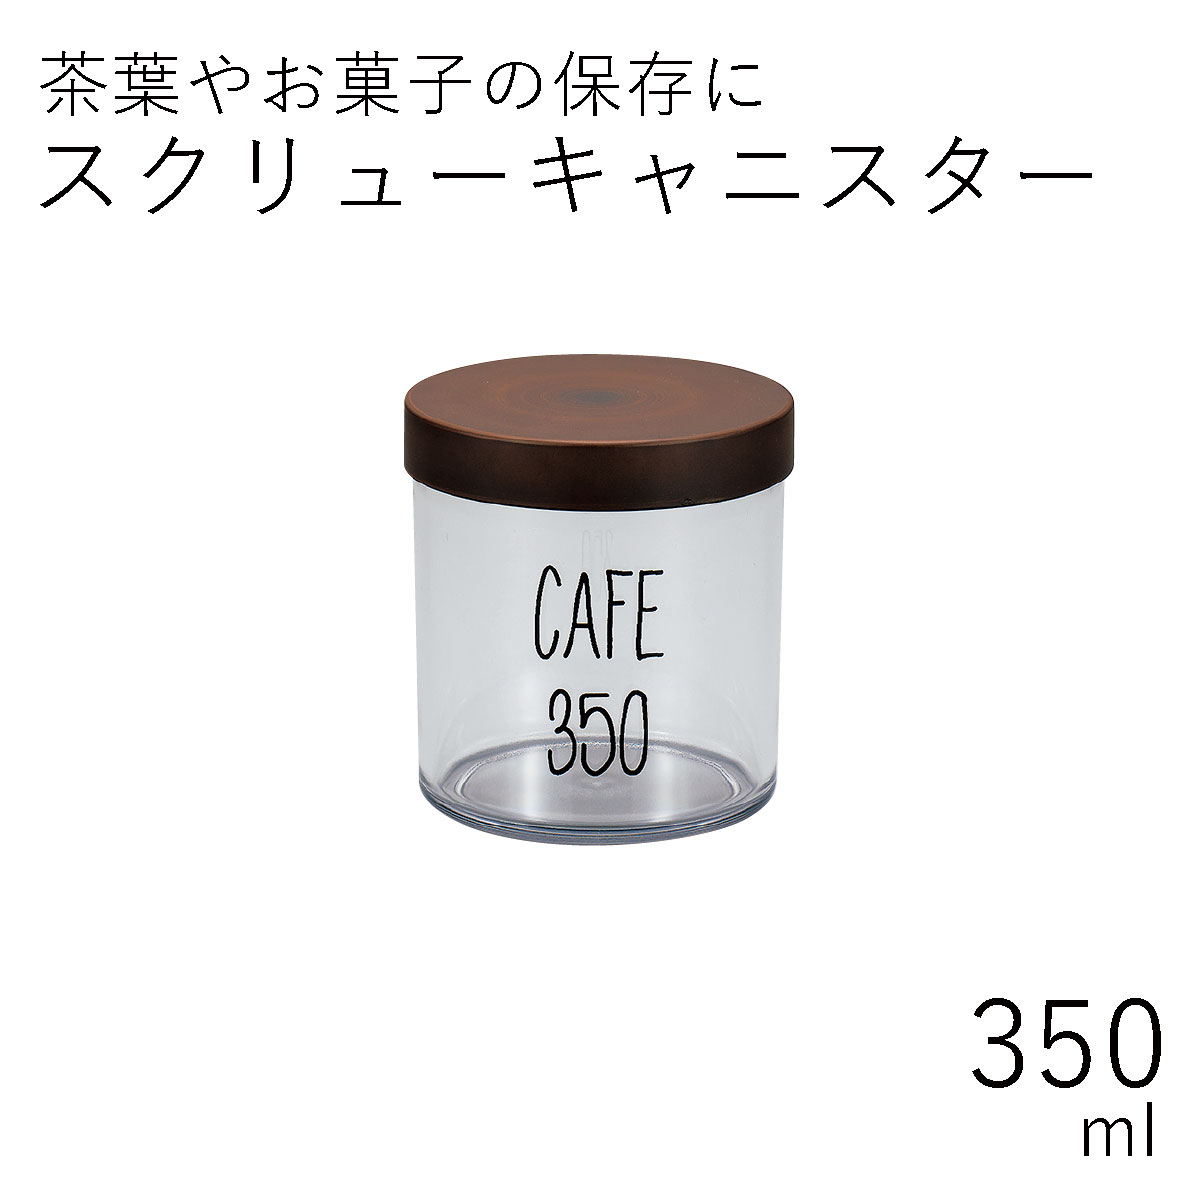 茶筒”HAKOYA スクリューキャニスター 350ml”ナチュラル日本製茶器 日本茶 珈琲 コーヒー おしゃれ TEA CADDY